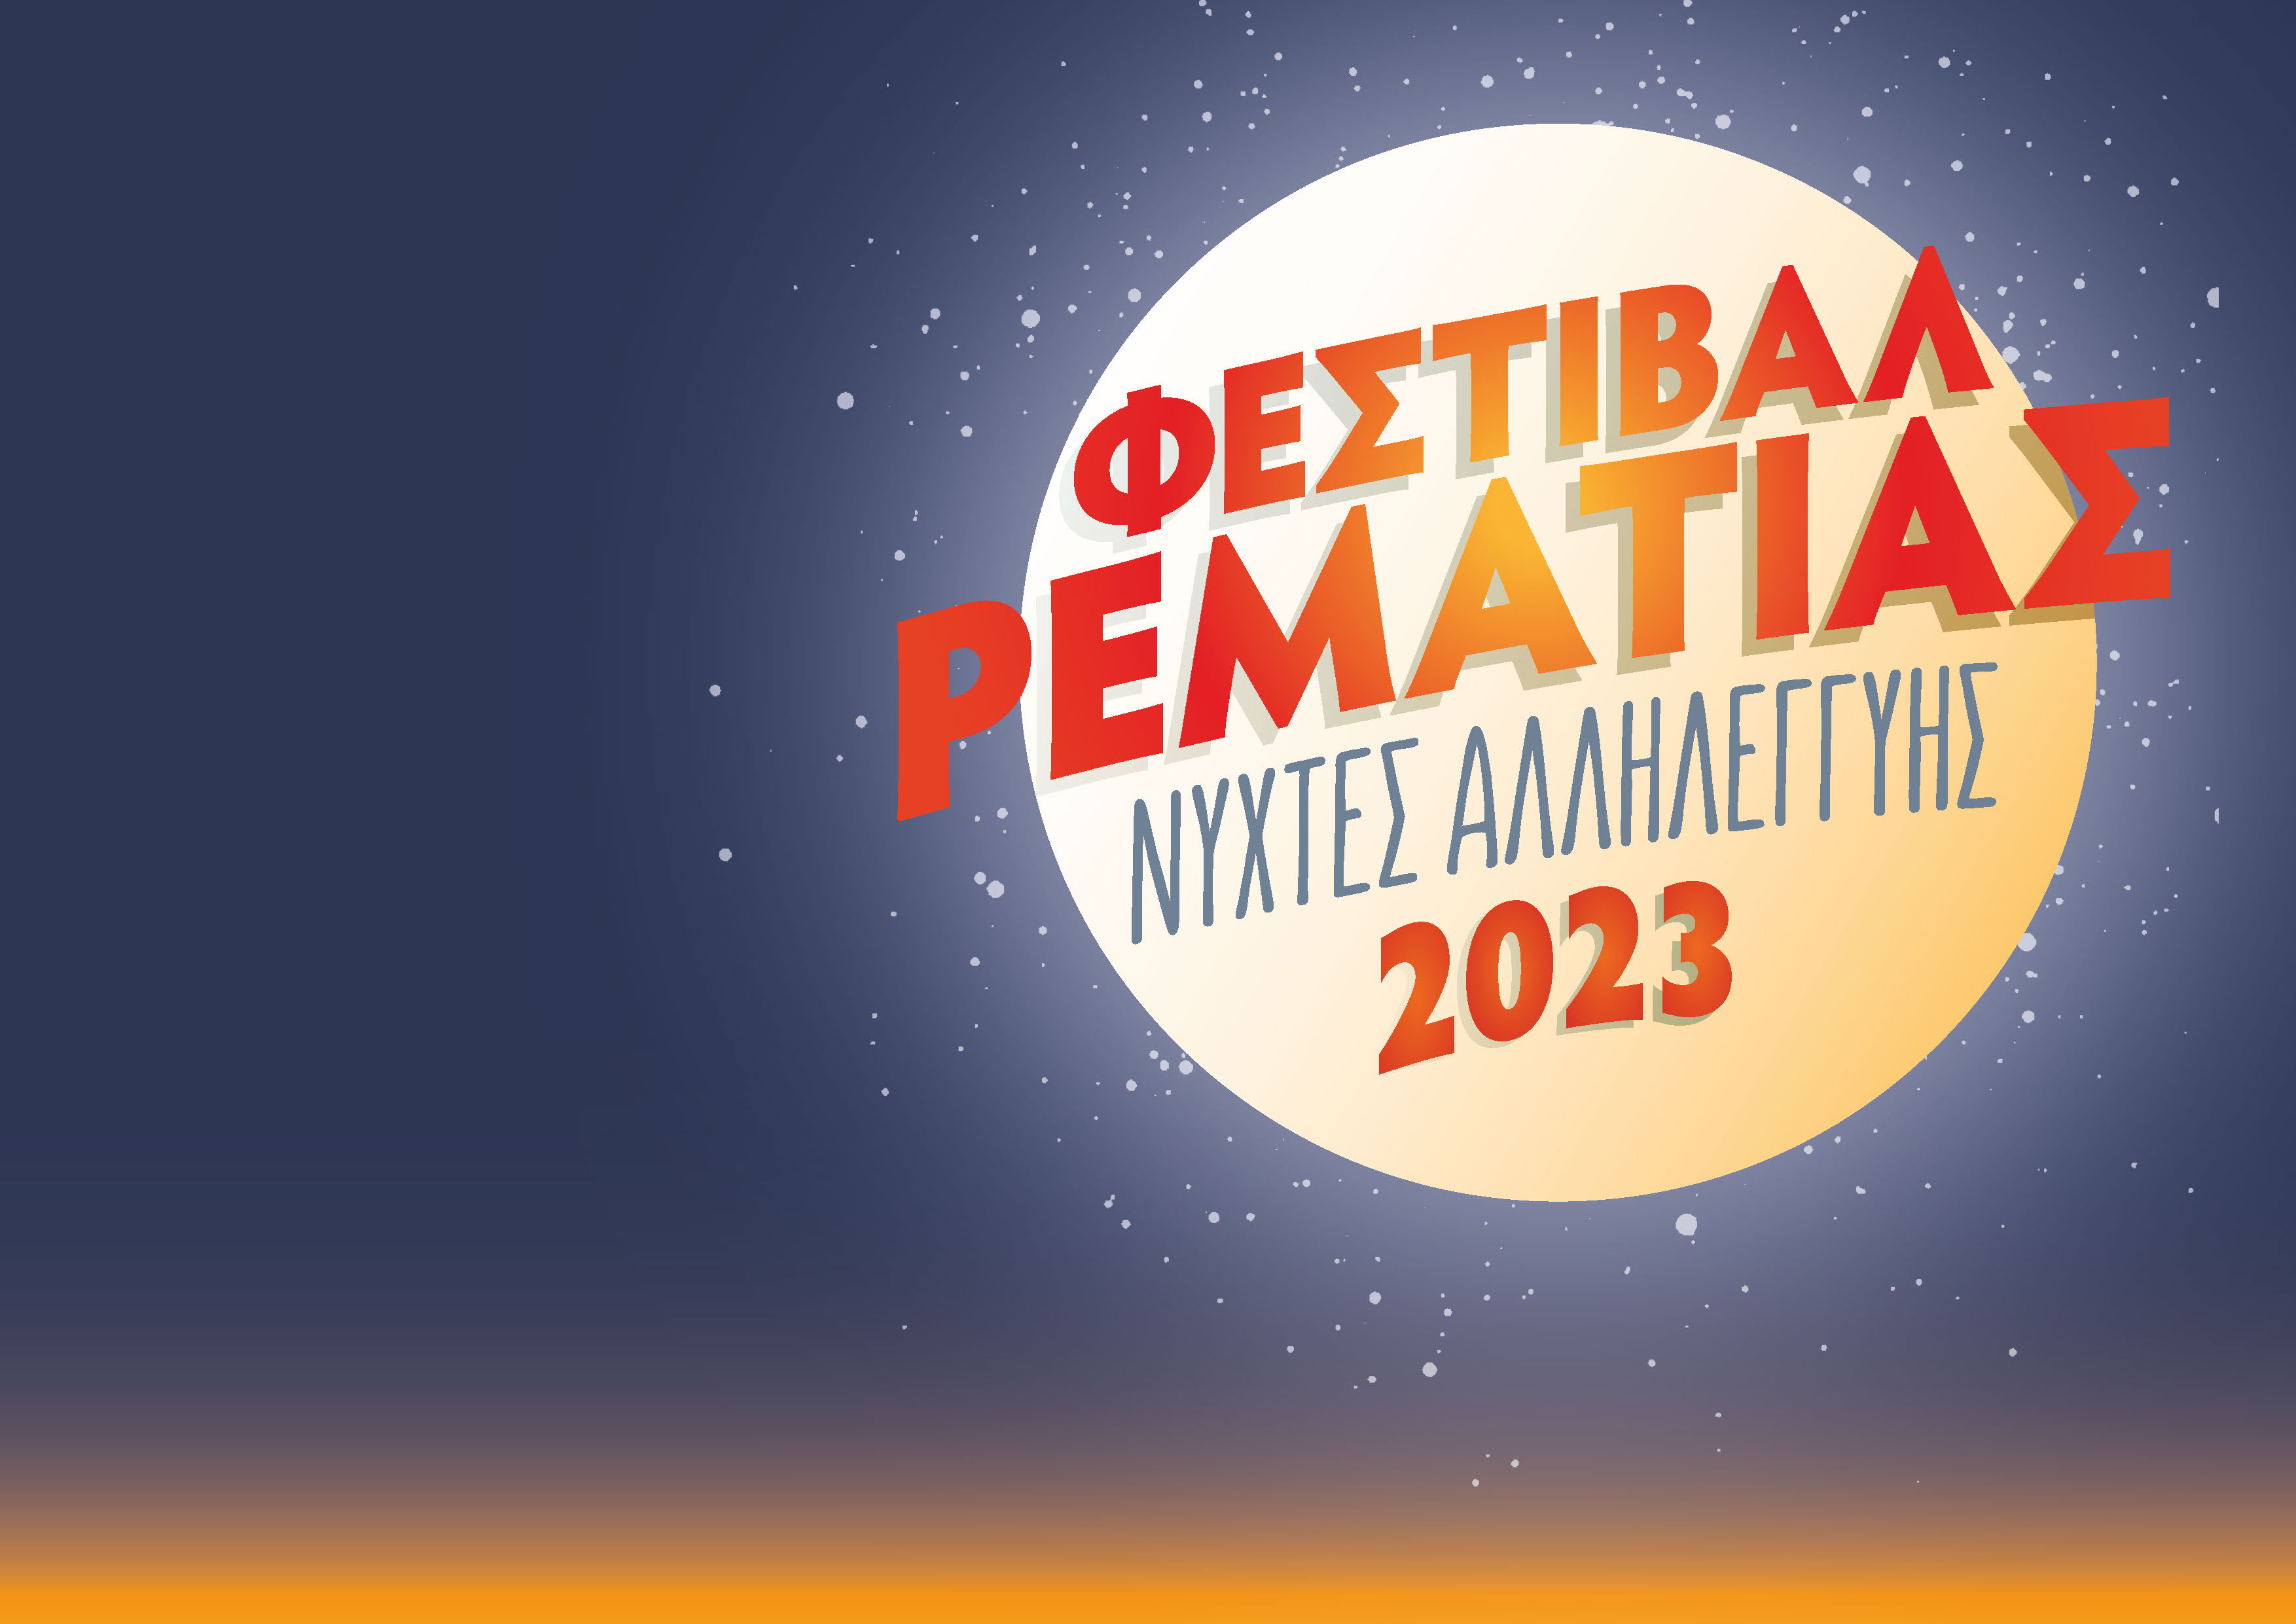 Festival Rematias 2023 Logo 1